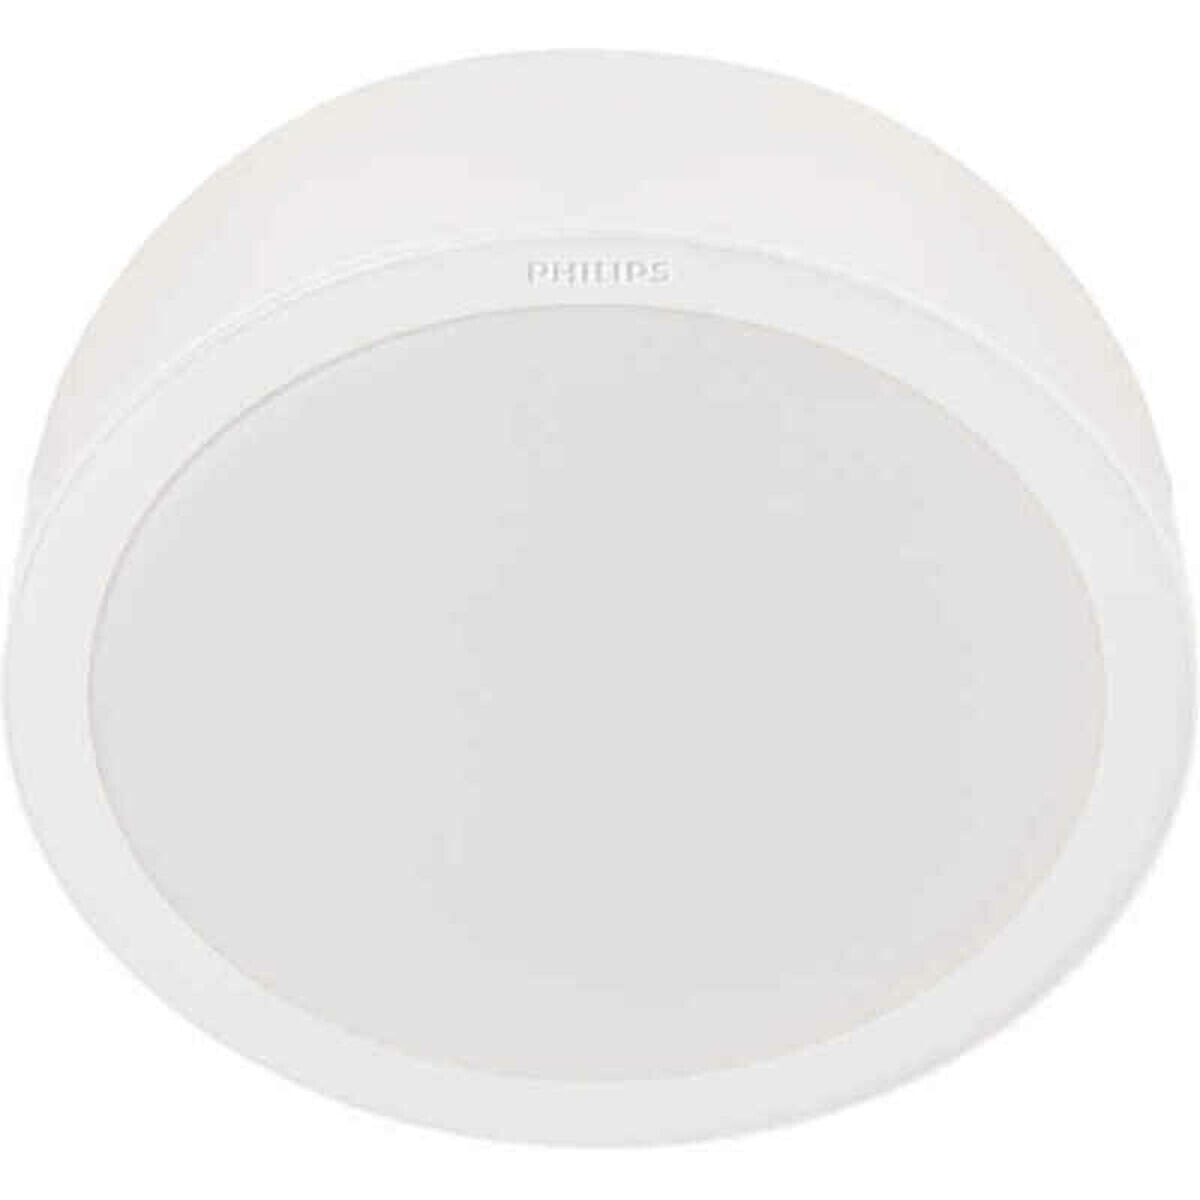 LED Flush-fitting ceiling light Philips Downlight 24 W (4000 K)